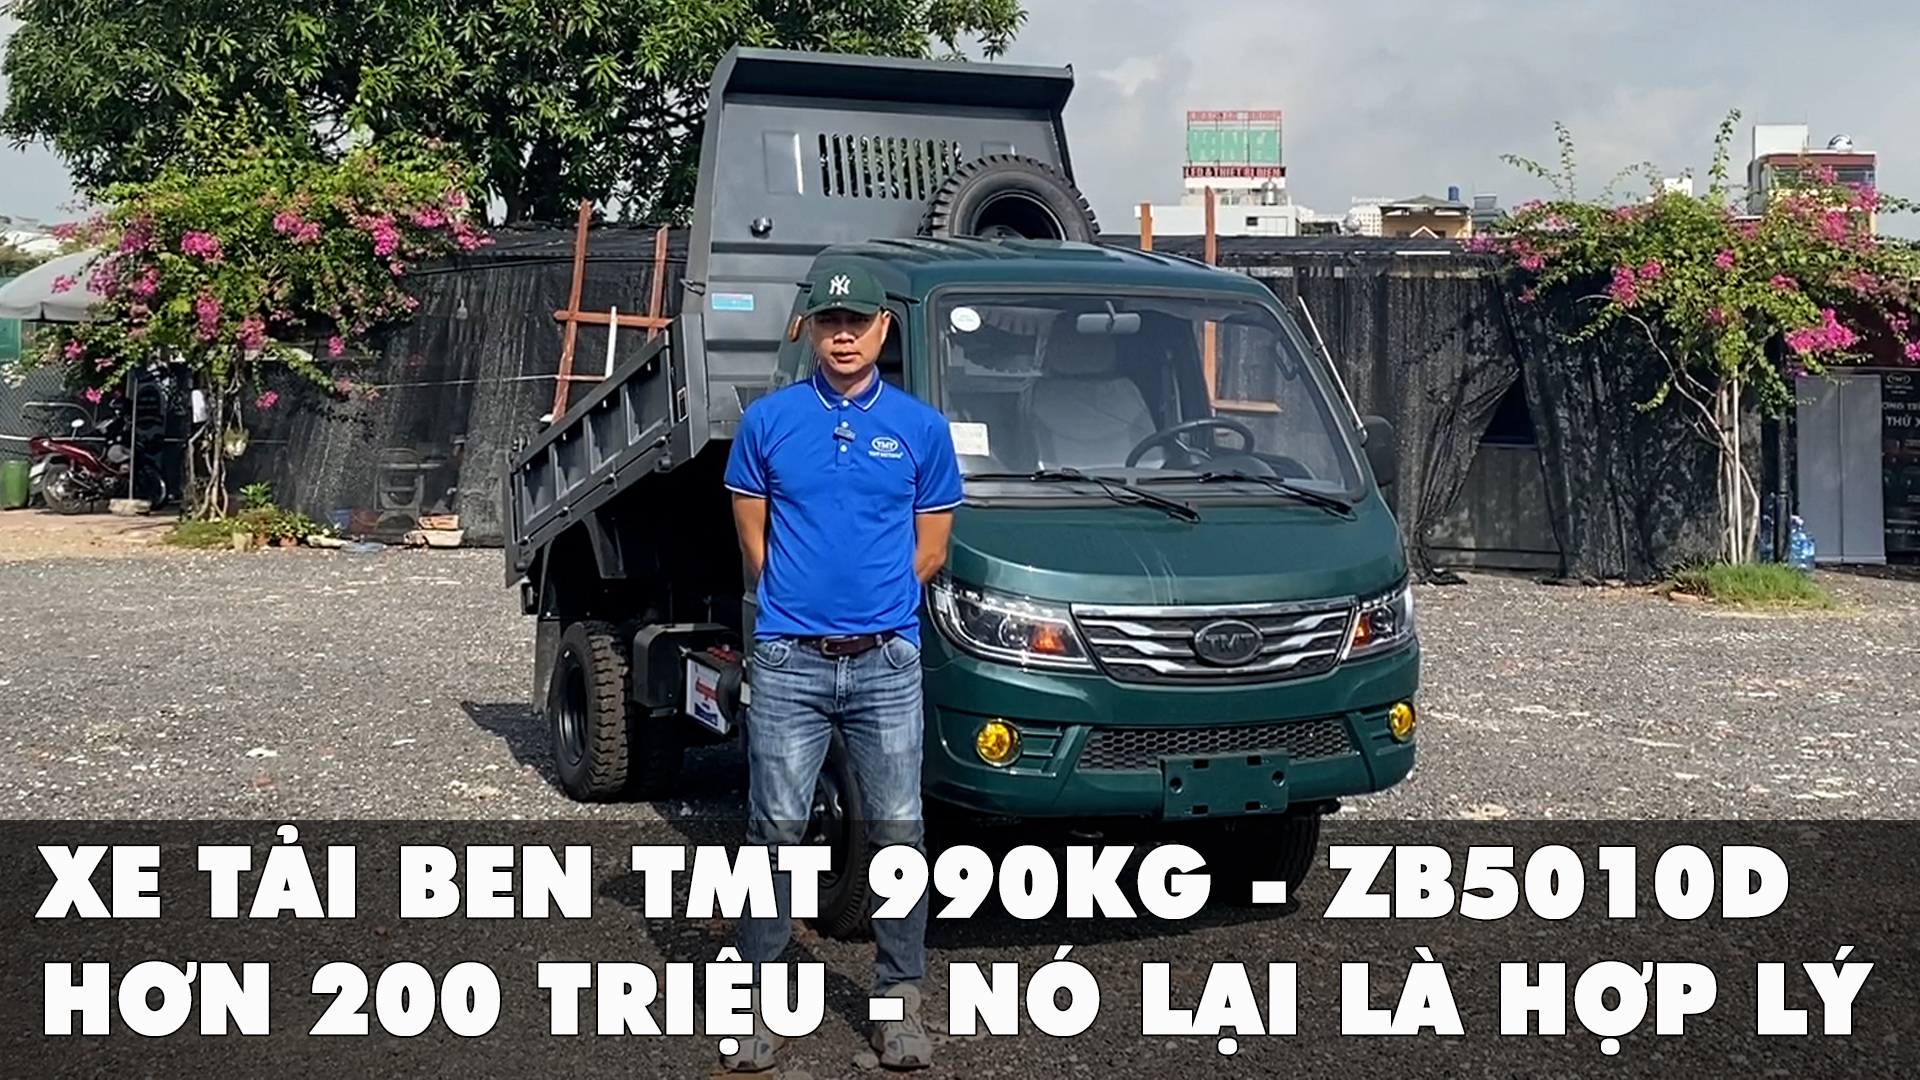 Xe tải ben TMT 990kg: Hơn 200 triệu - Nó lại là hợp lý!.